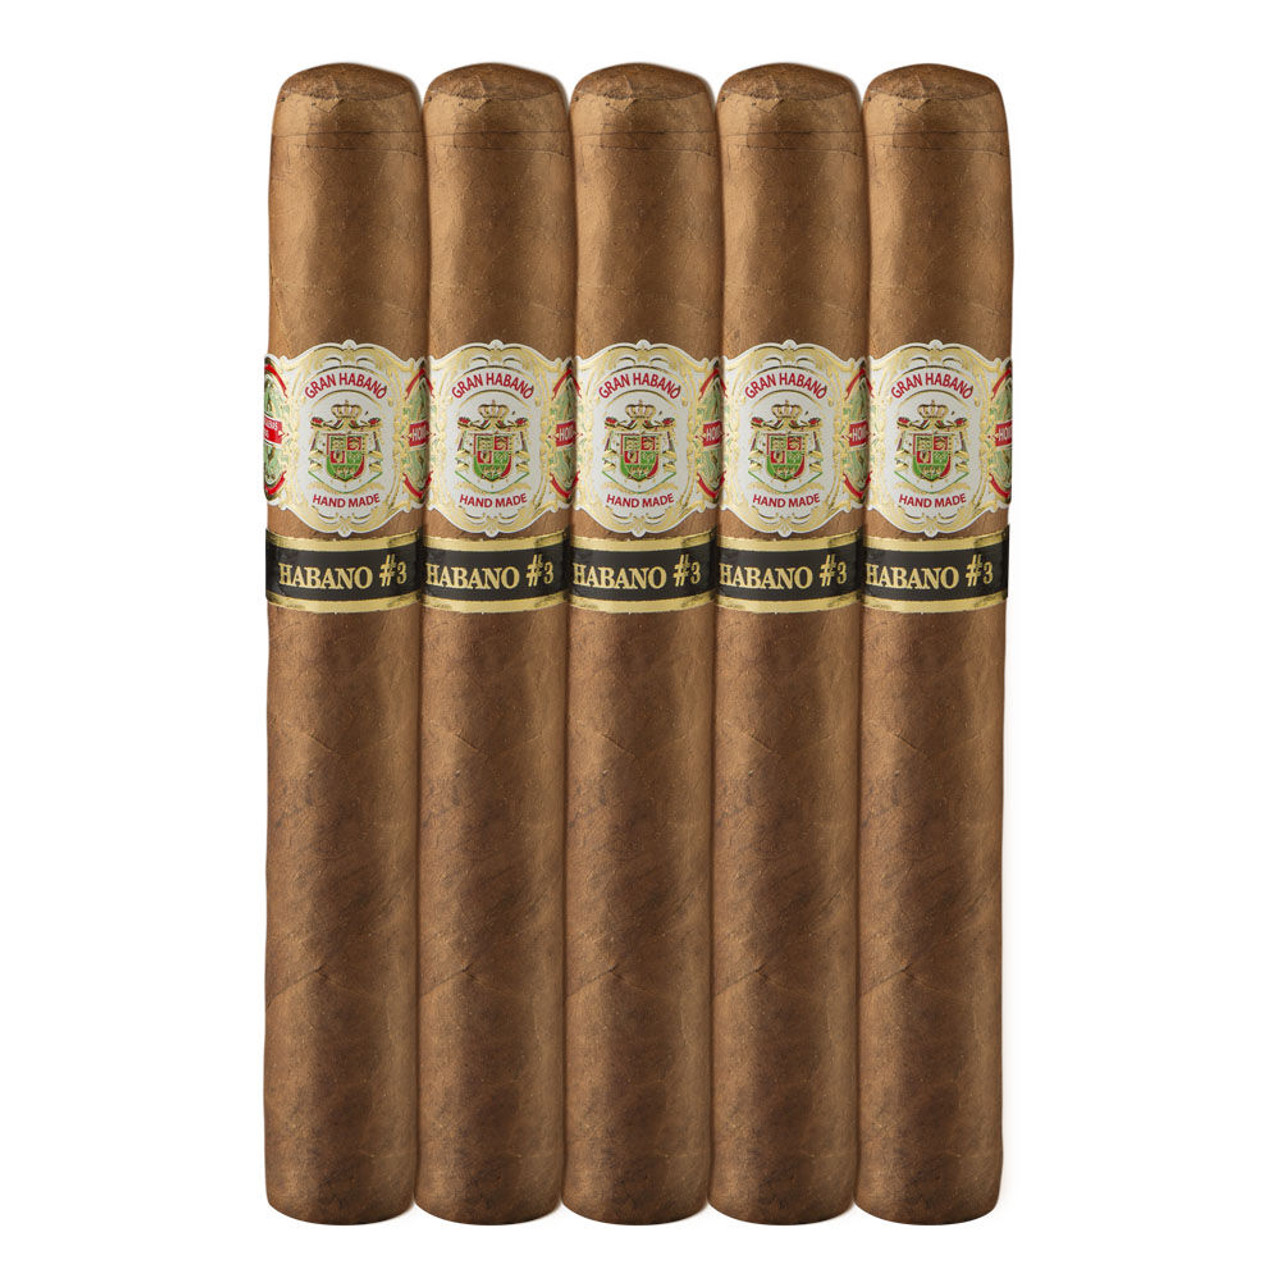 Gran Habano #3 Habano Gran Robusto Cigars - 6 x 54 (Pack of 5)